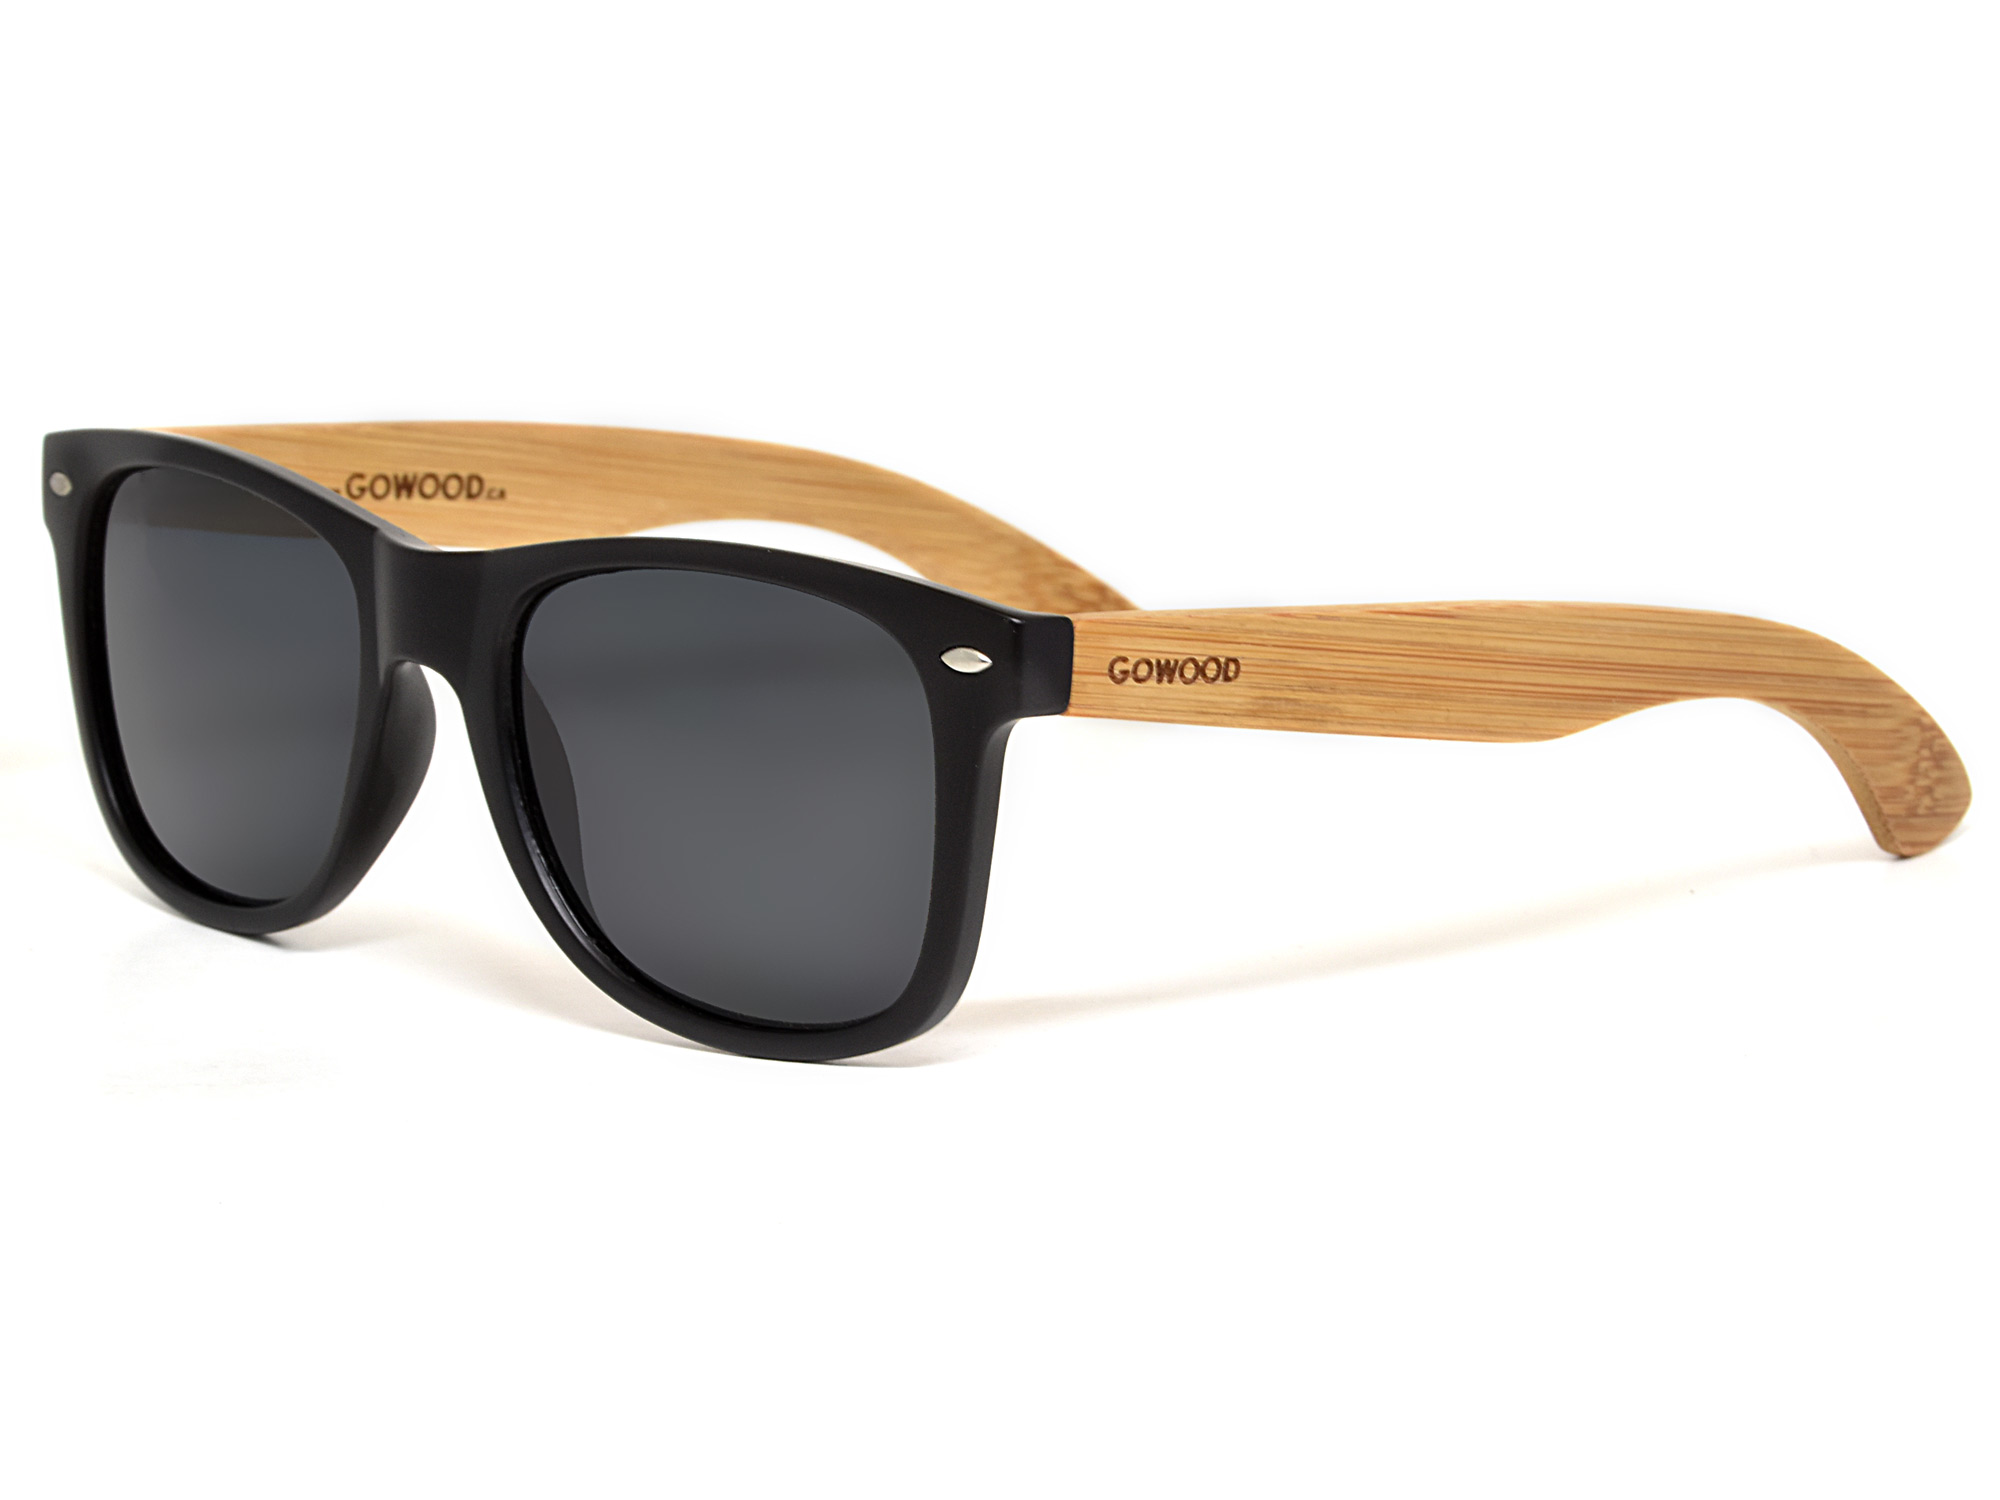 Bamboo wood sunglasses wayfarer style with black polarized lenses